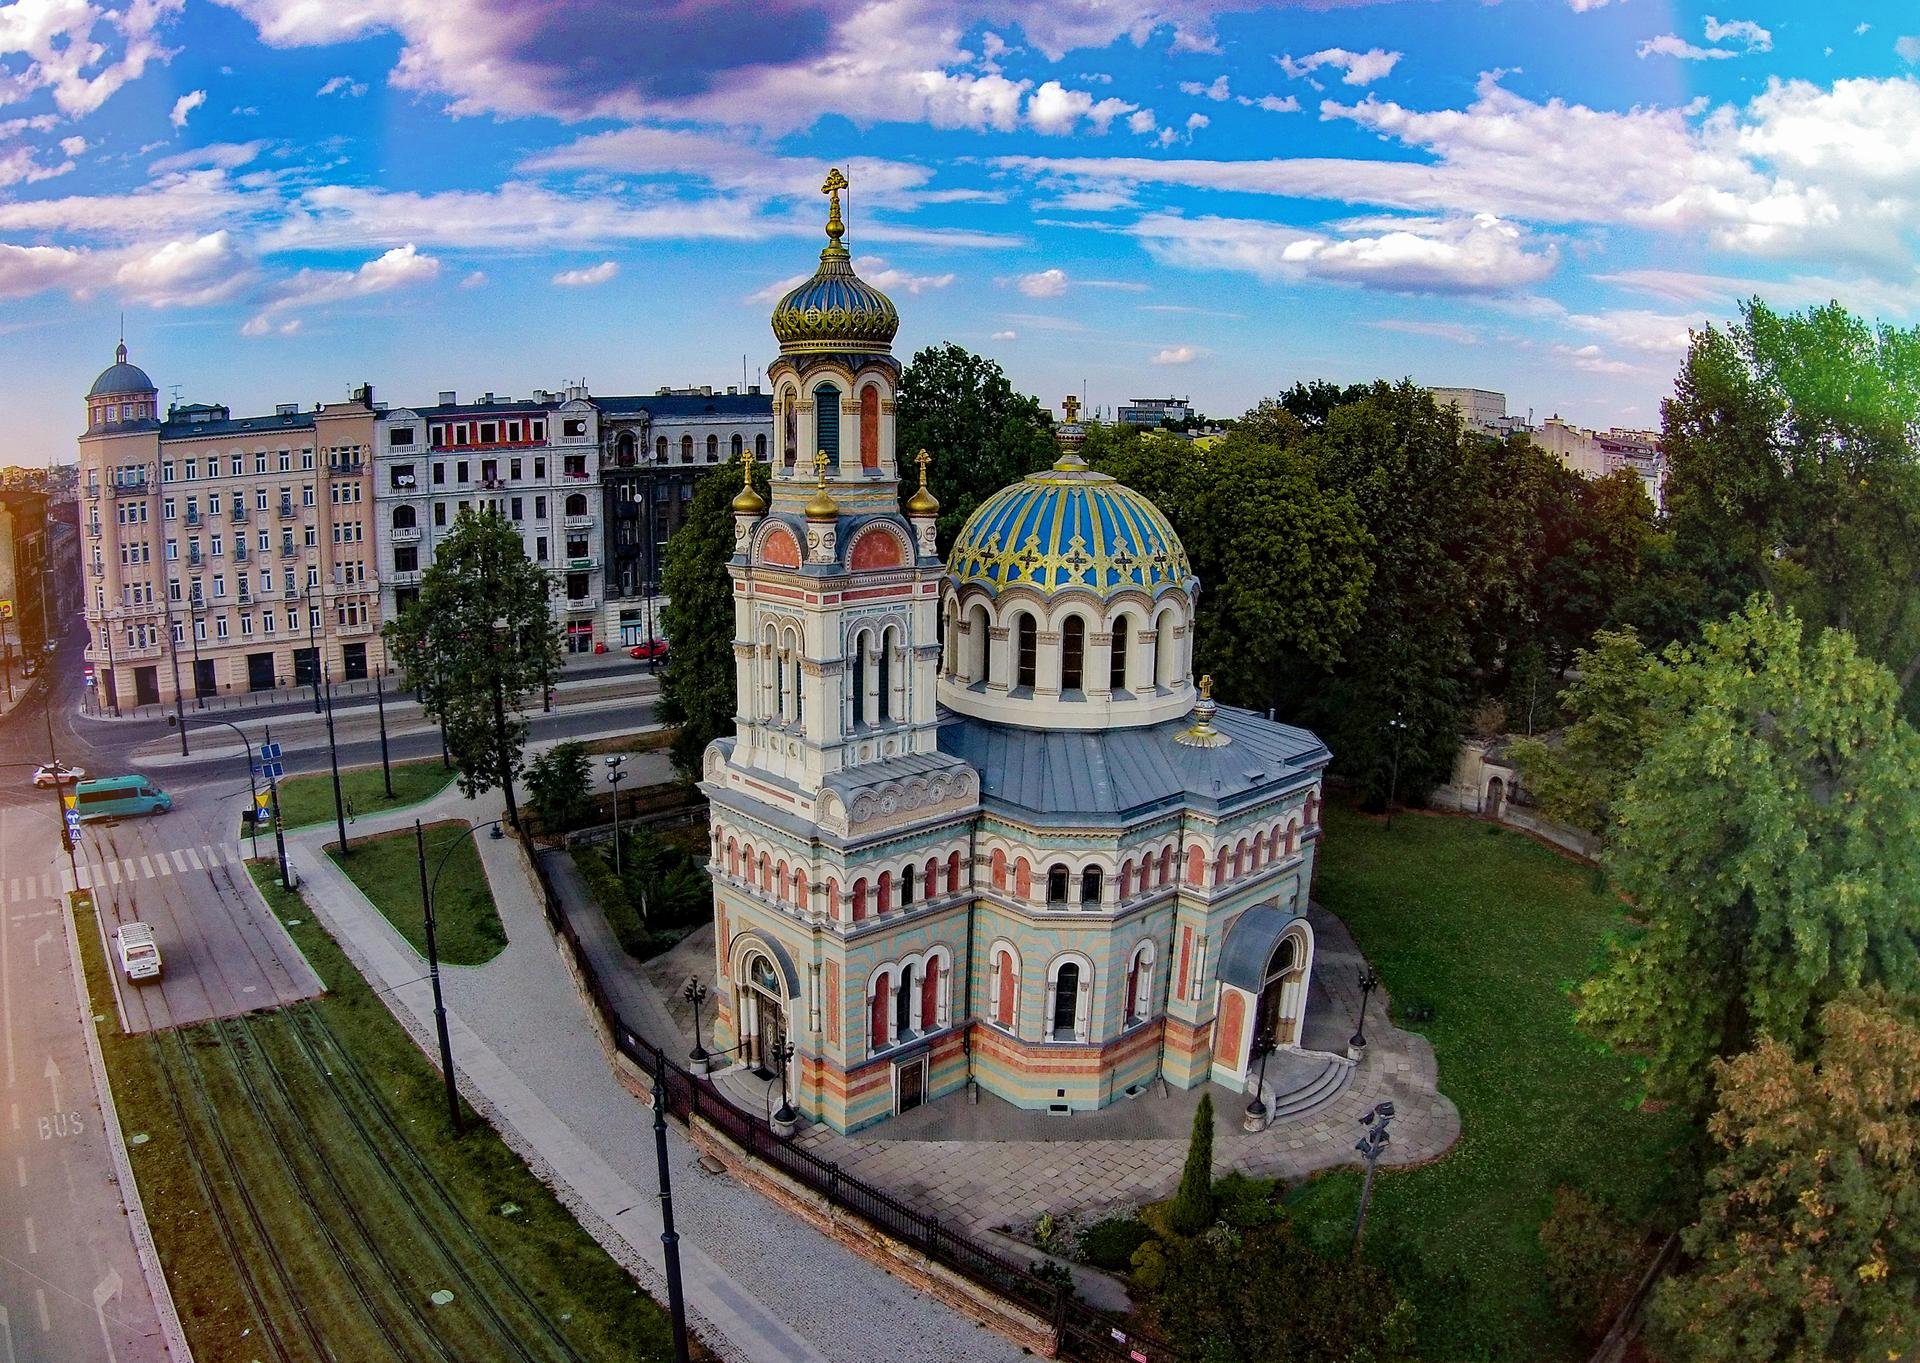 Orthodox Church 